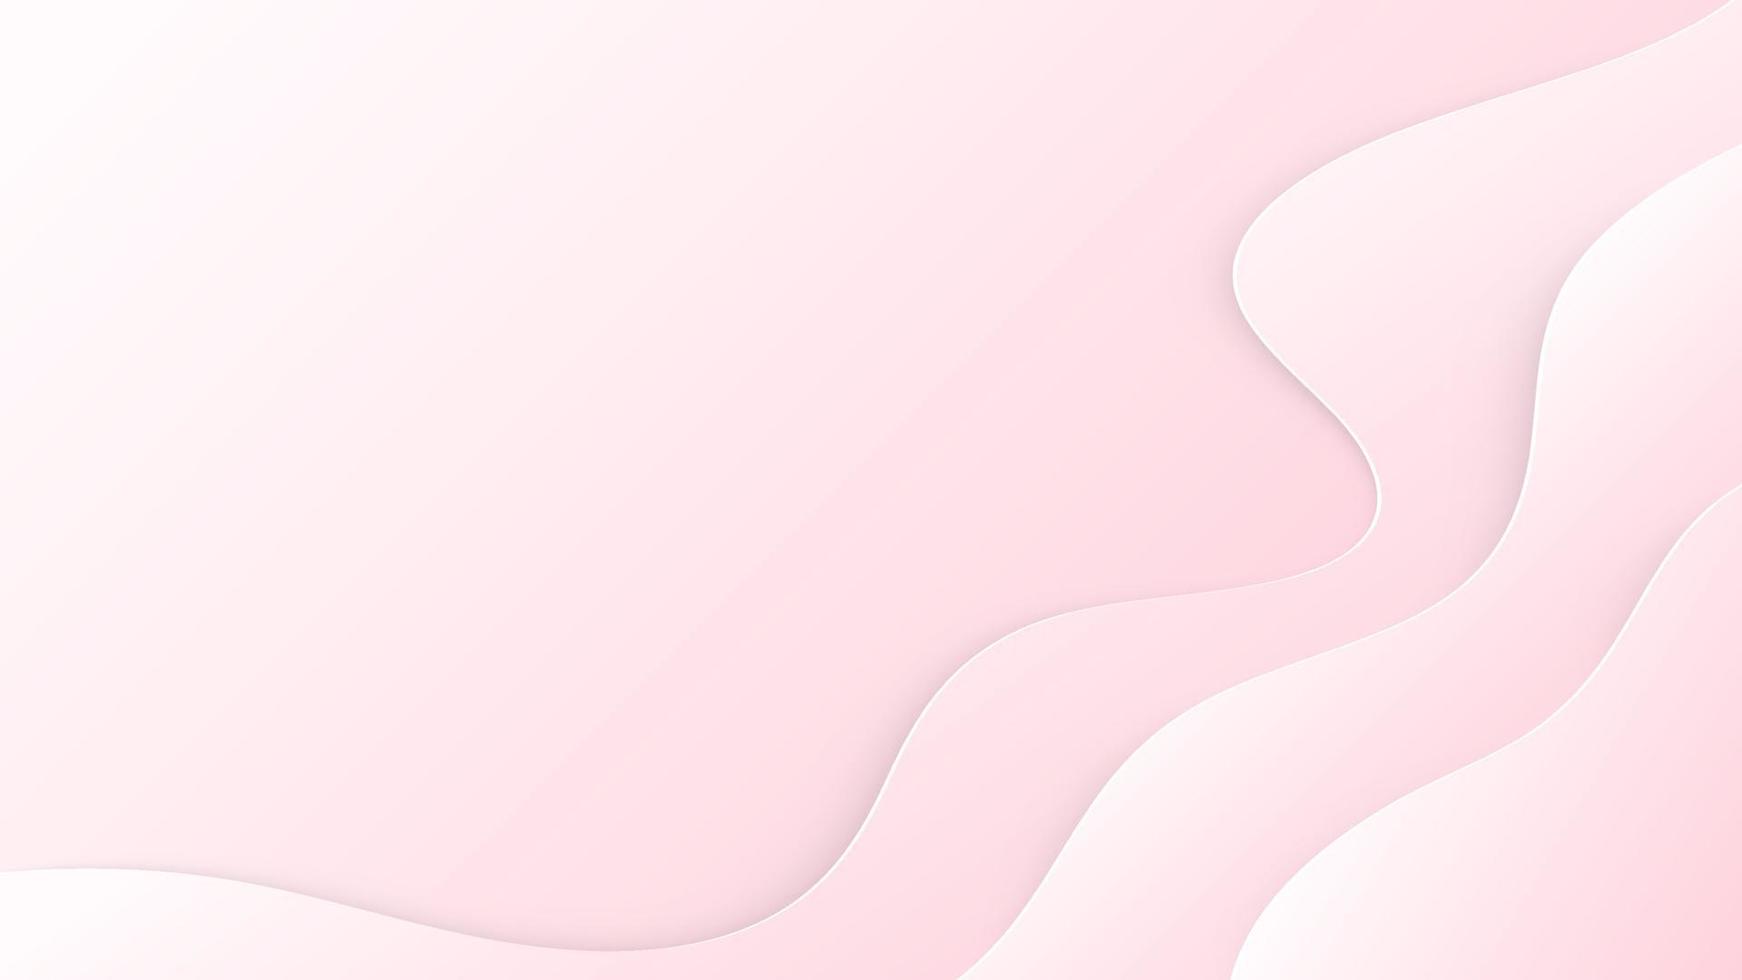 Pink background paper art line curve design. Vector paper cut illustration